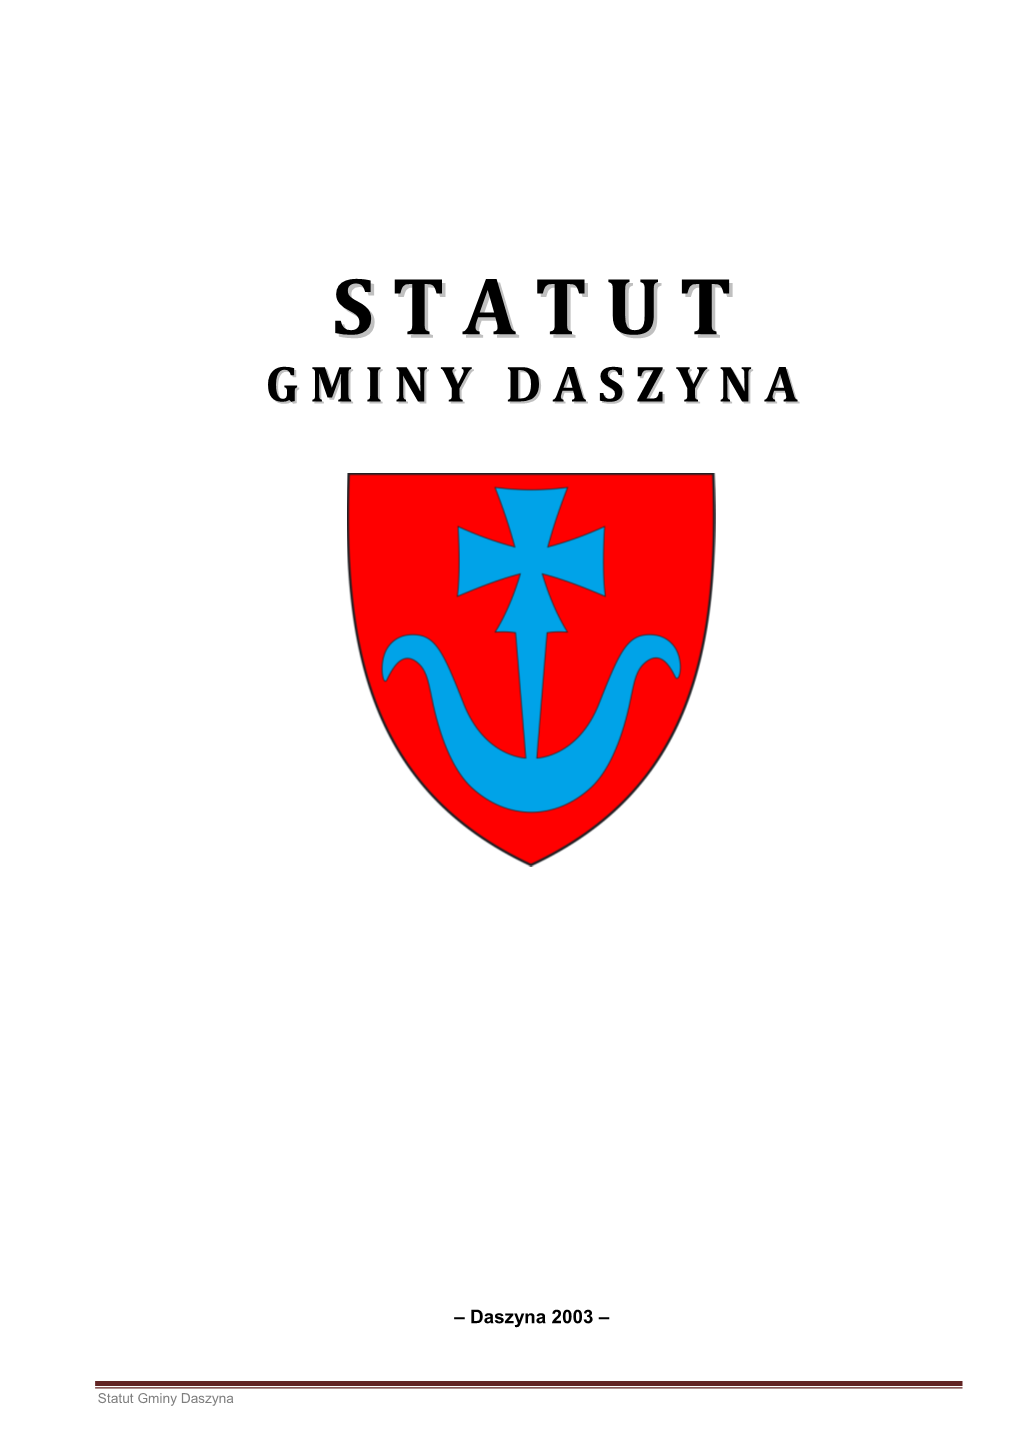 Statut Gminy Daszyna